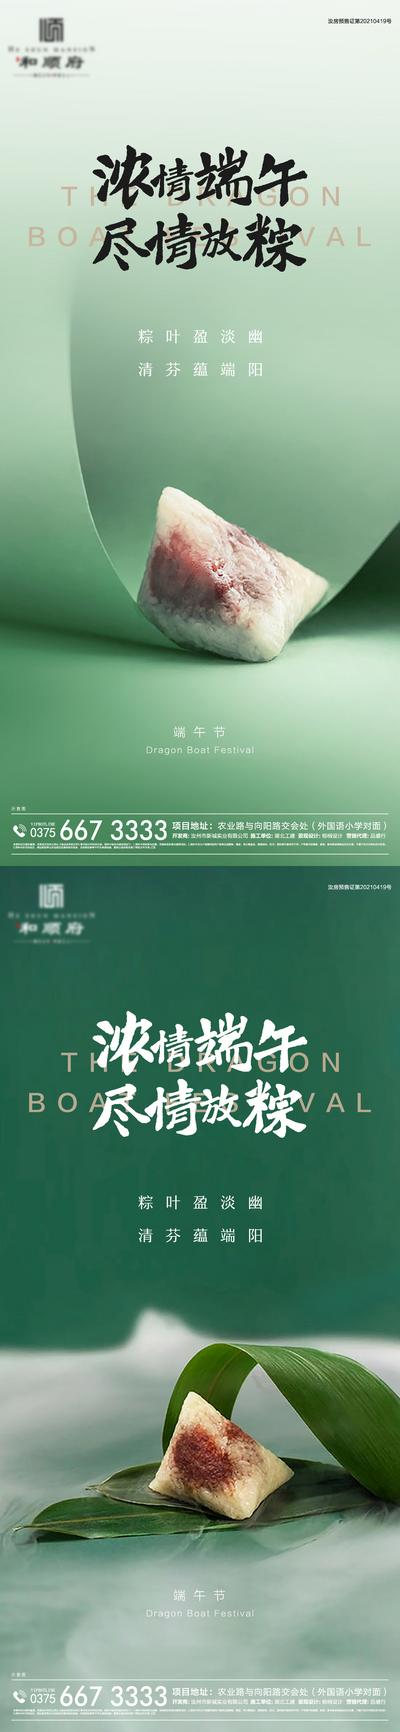 南门网 海报 地产 中国传统节日 端午节 粽子